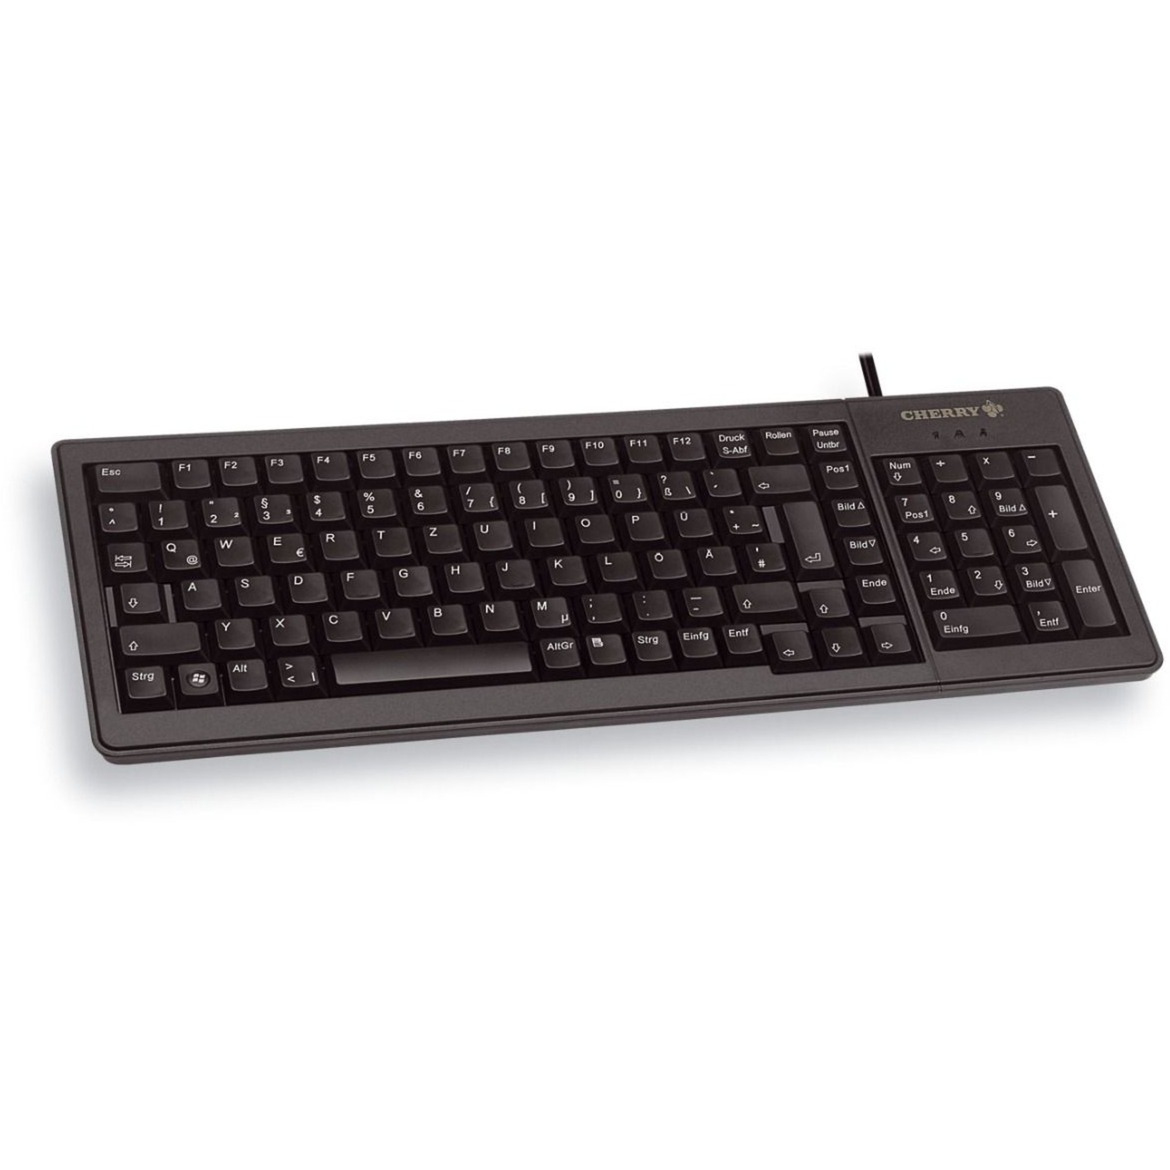 XS Complete Keyboard G84-5200, Tastatur von Cherry